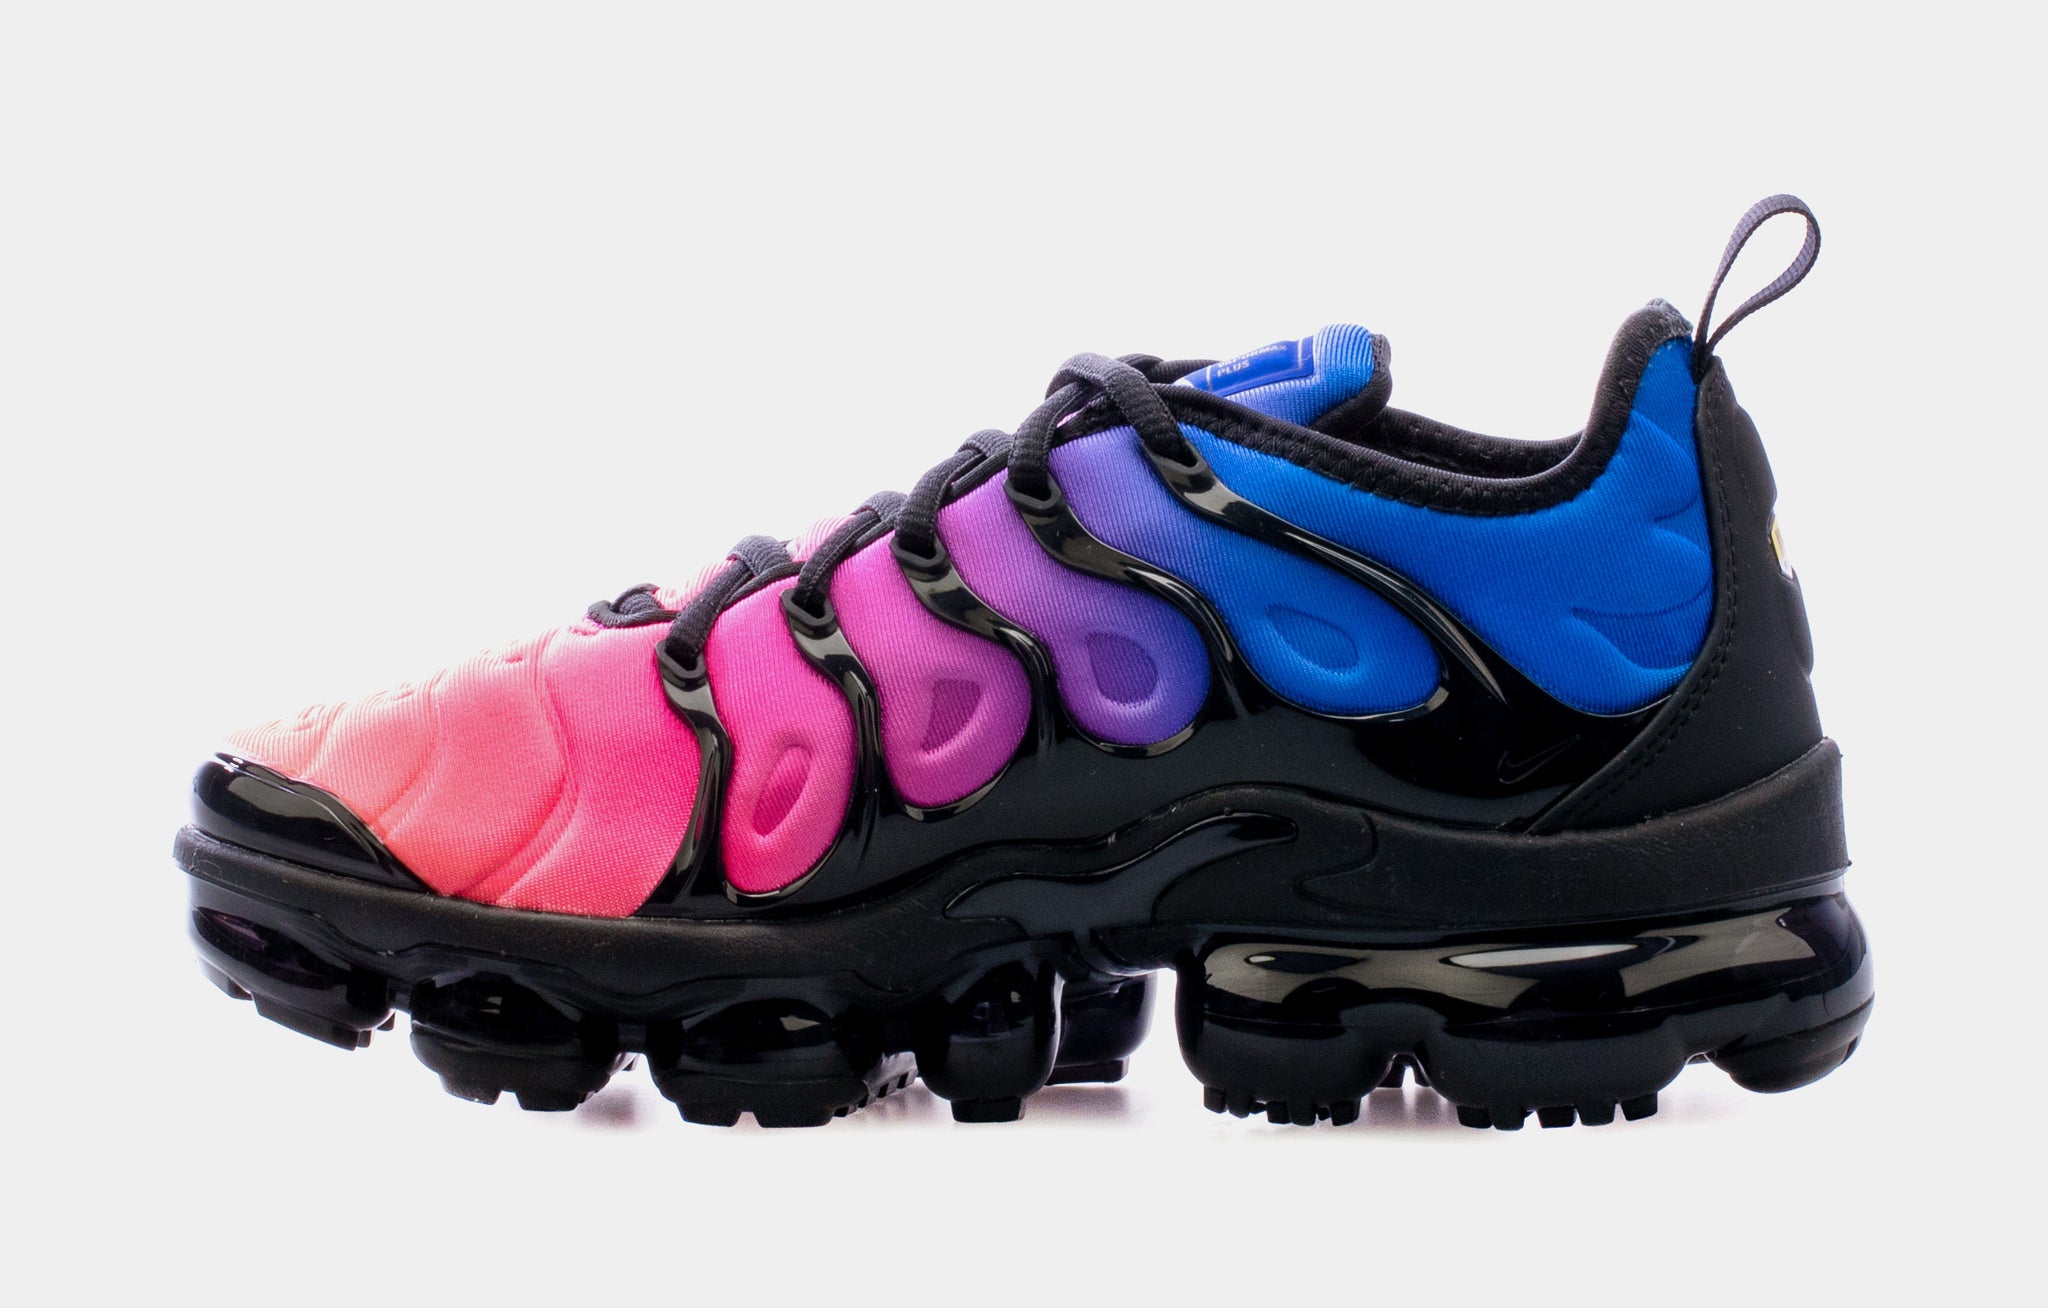 estrés frágil colección Nike Air VaporMax Plus Cotton Candy Womens Running Shoes Black Pink Blue  DX2746-400 – Shoe Palace